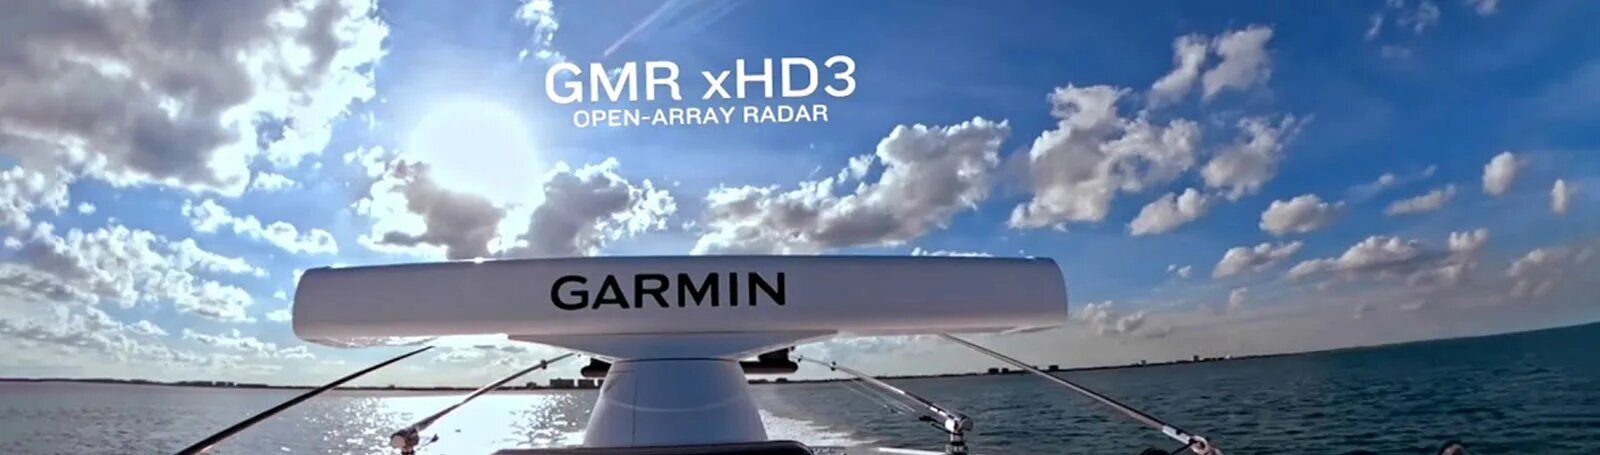 Морський радар Garmin GMR 1234/1236 xHD3 - фото pic_dbd0be641d86189f4fdb7d45bb32e925_1920x9000_1.jpg